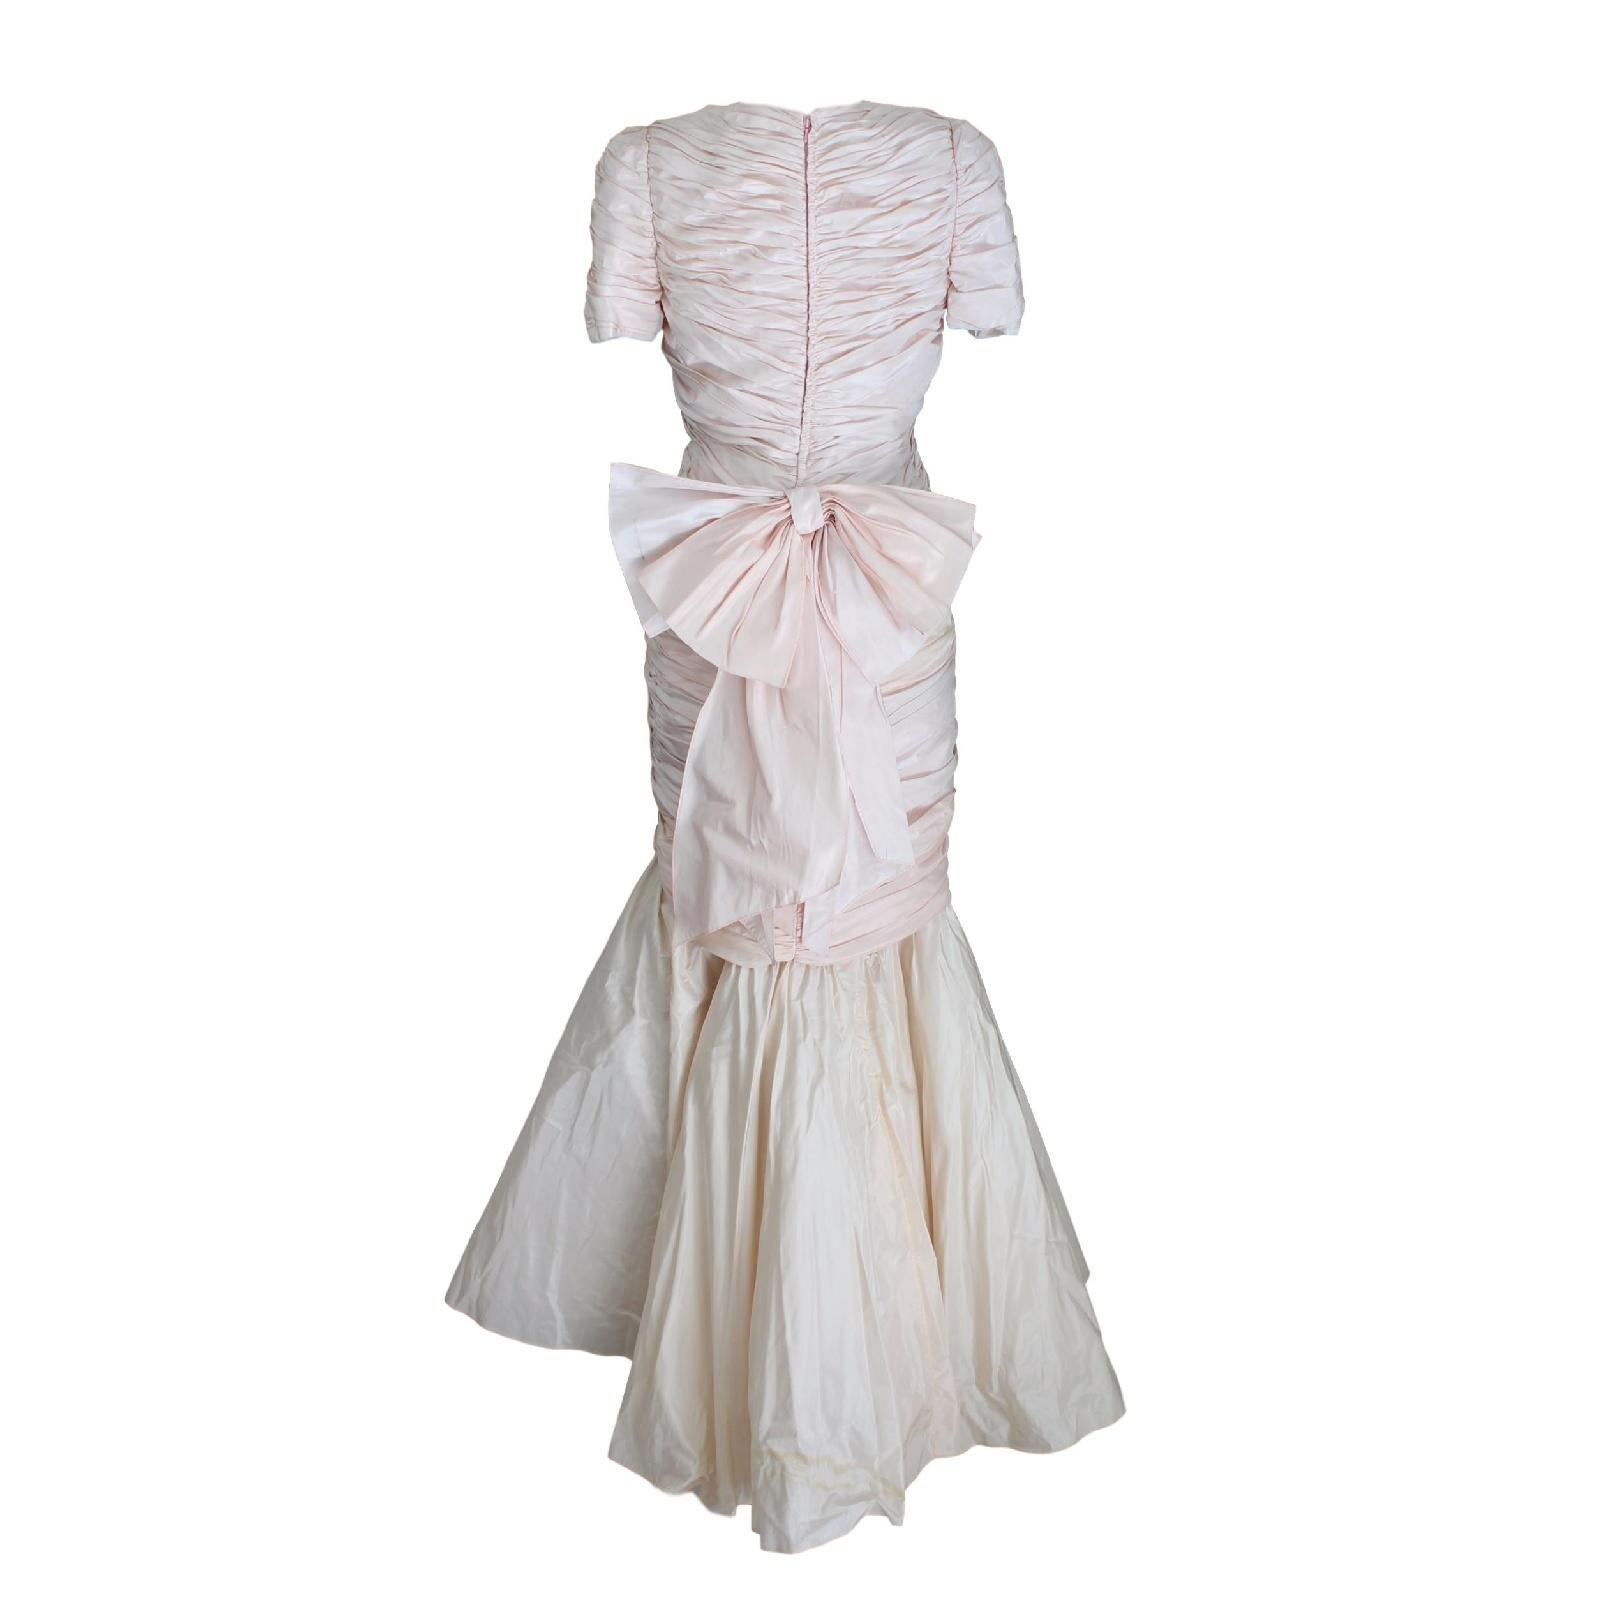 Vintage Cailan'd Hochzeitskleid von 1980. Das Kleid besteht aus zwei Teilen. Sie können es auf zwei verschiedene Arten tragen: als Etuikleid oder als Meerjungfrauenkleid. Die Farbe ist ein raffiniertes Altrosa, hergestellt aus 100% Seide.